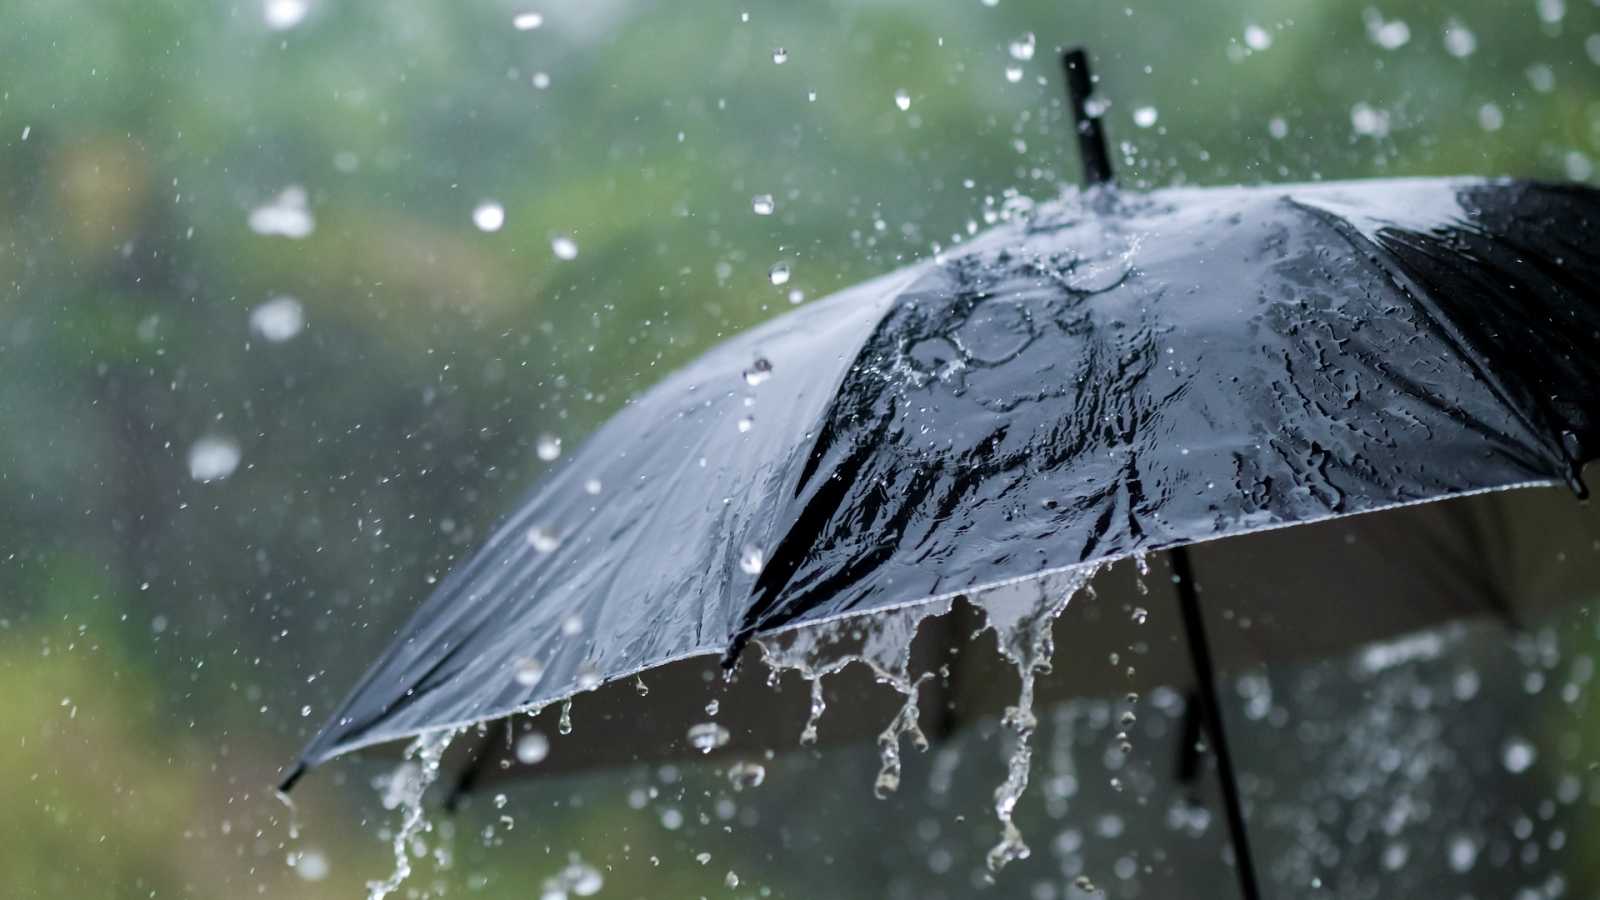 Inamed pronostica lluvias en gran parte del país para este domingo